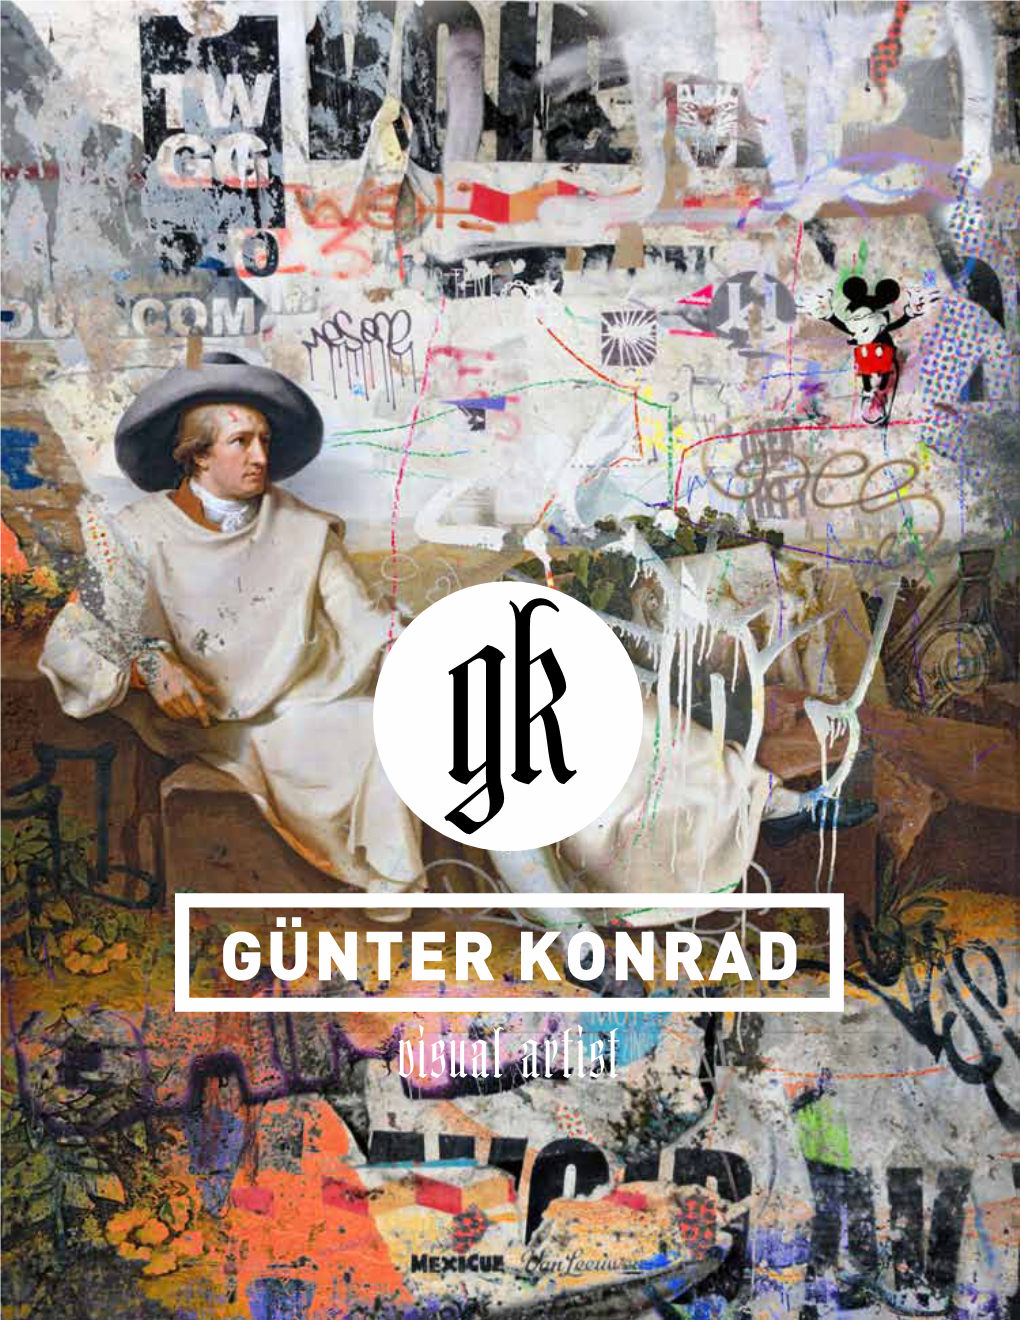 GÜNTER KONRAD Visual Artist Contents